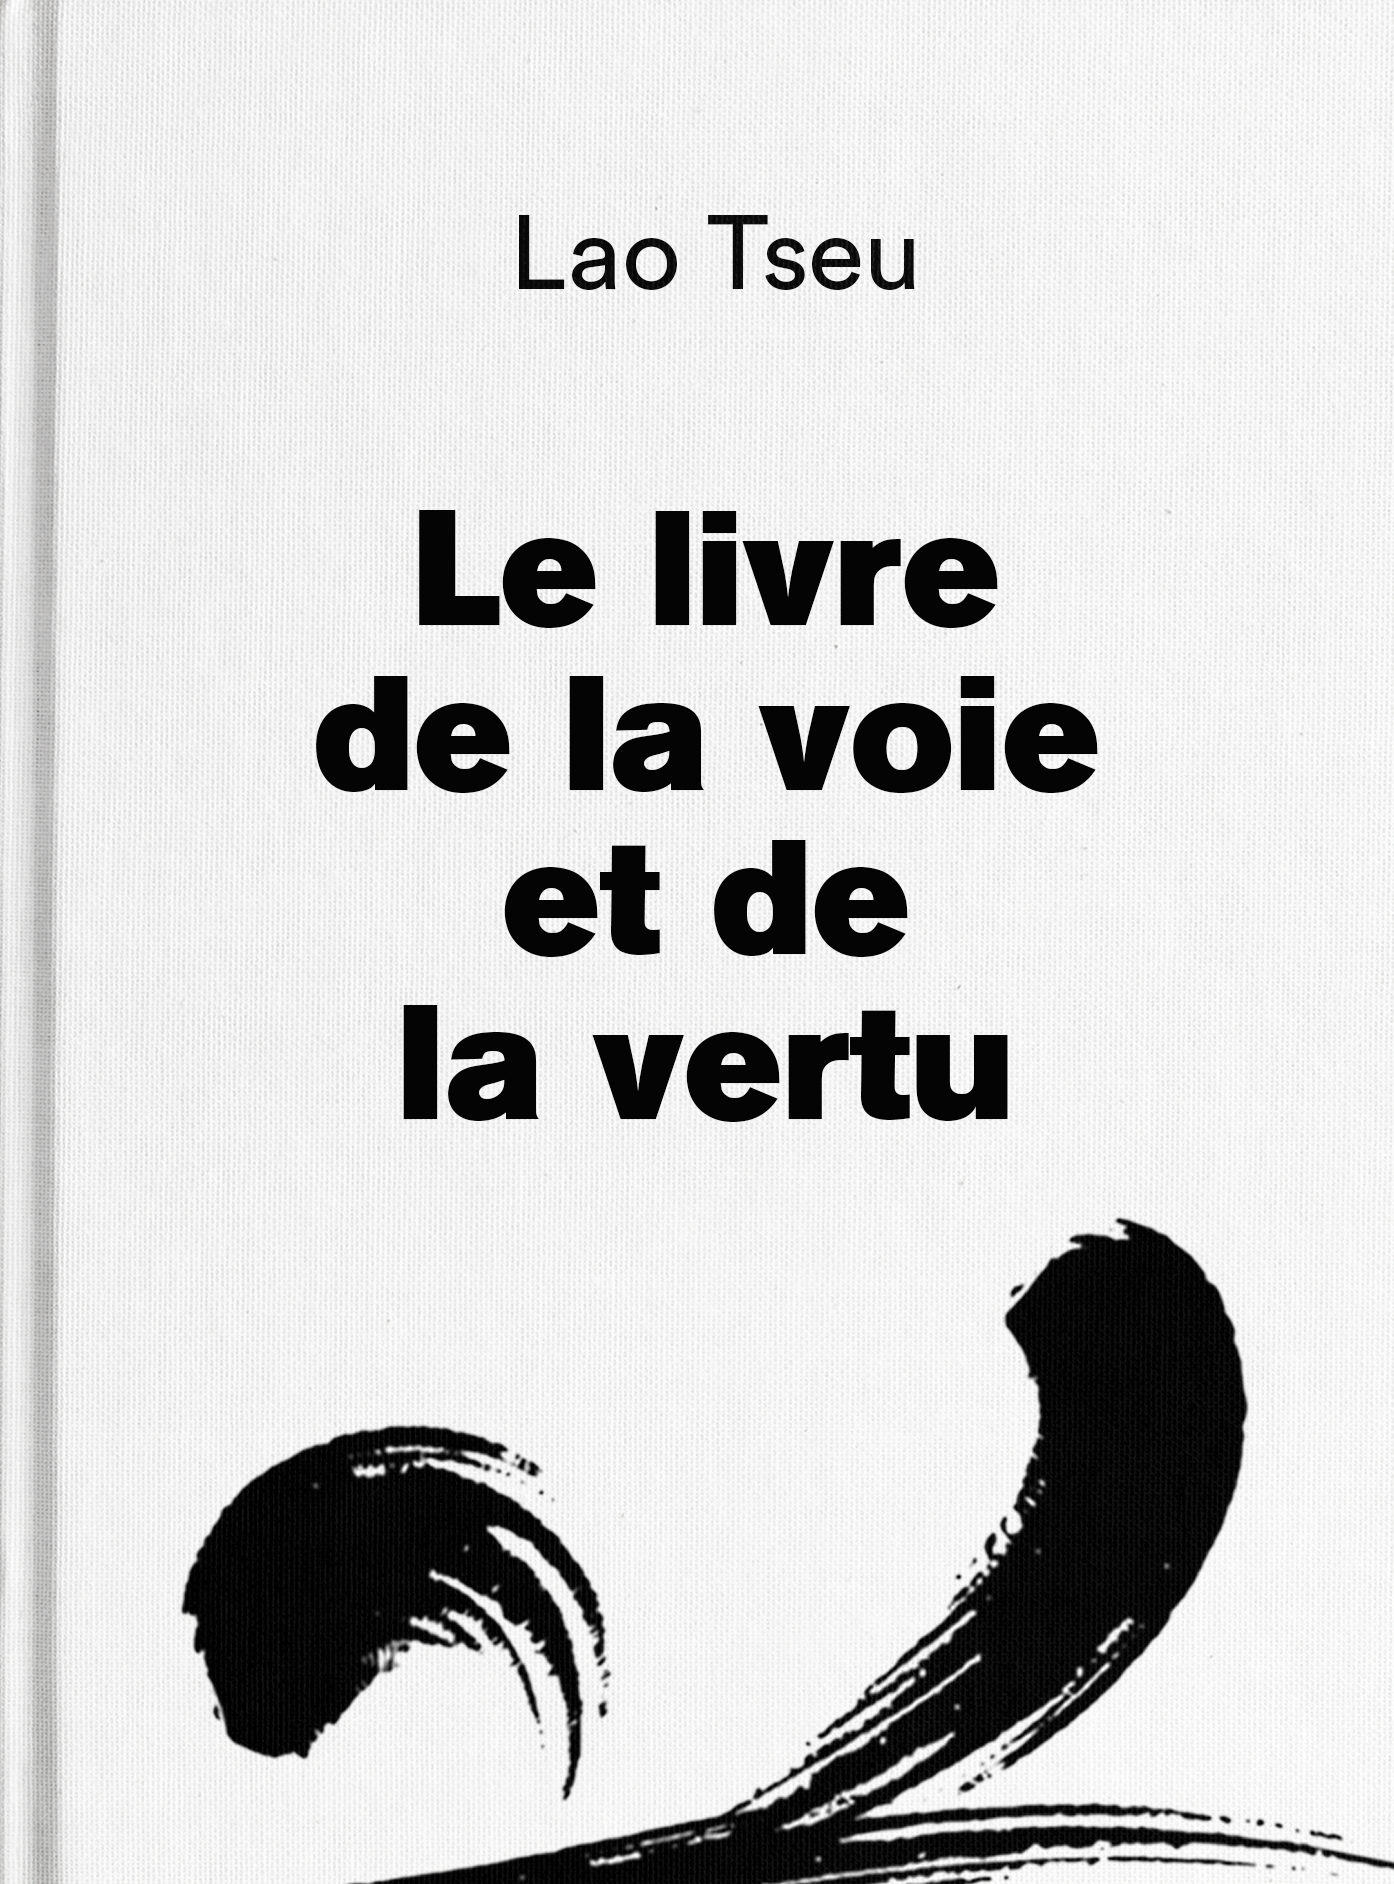 Le livre de la voie et de la vertu - Lao Tseu